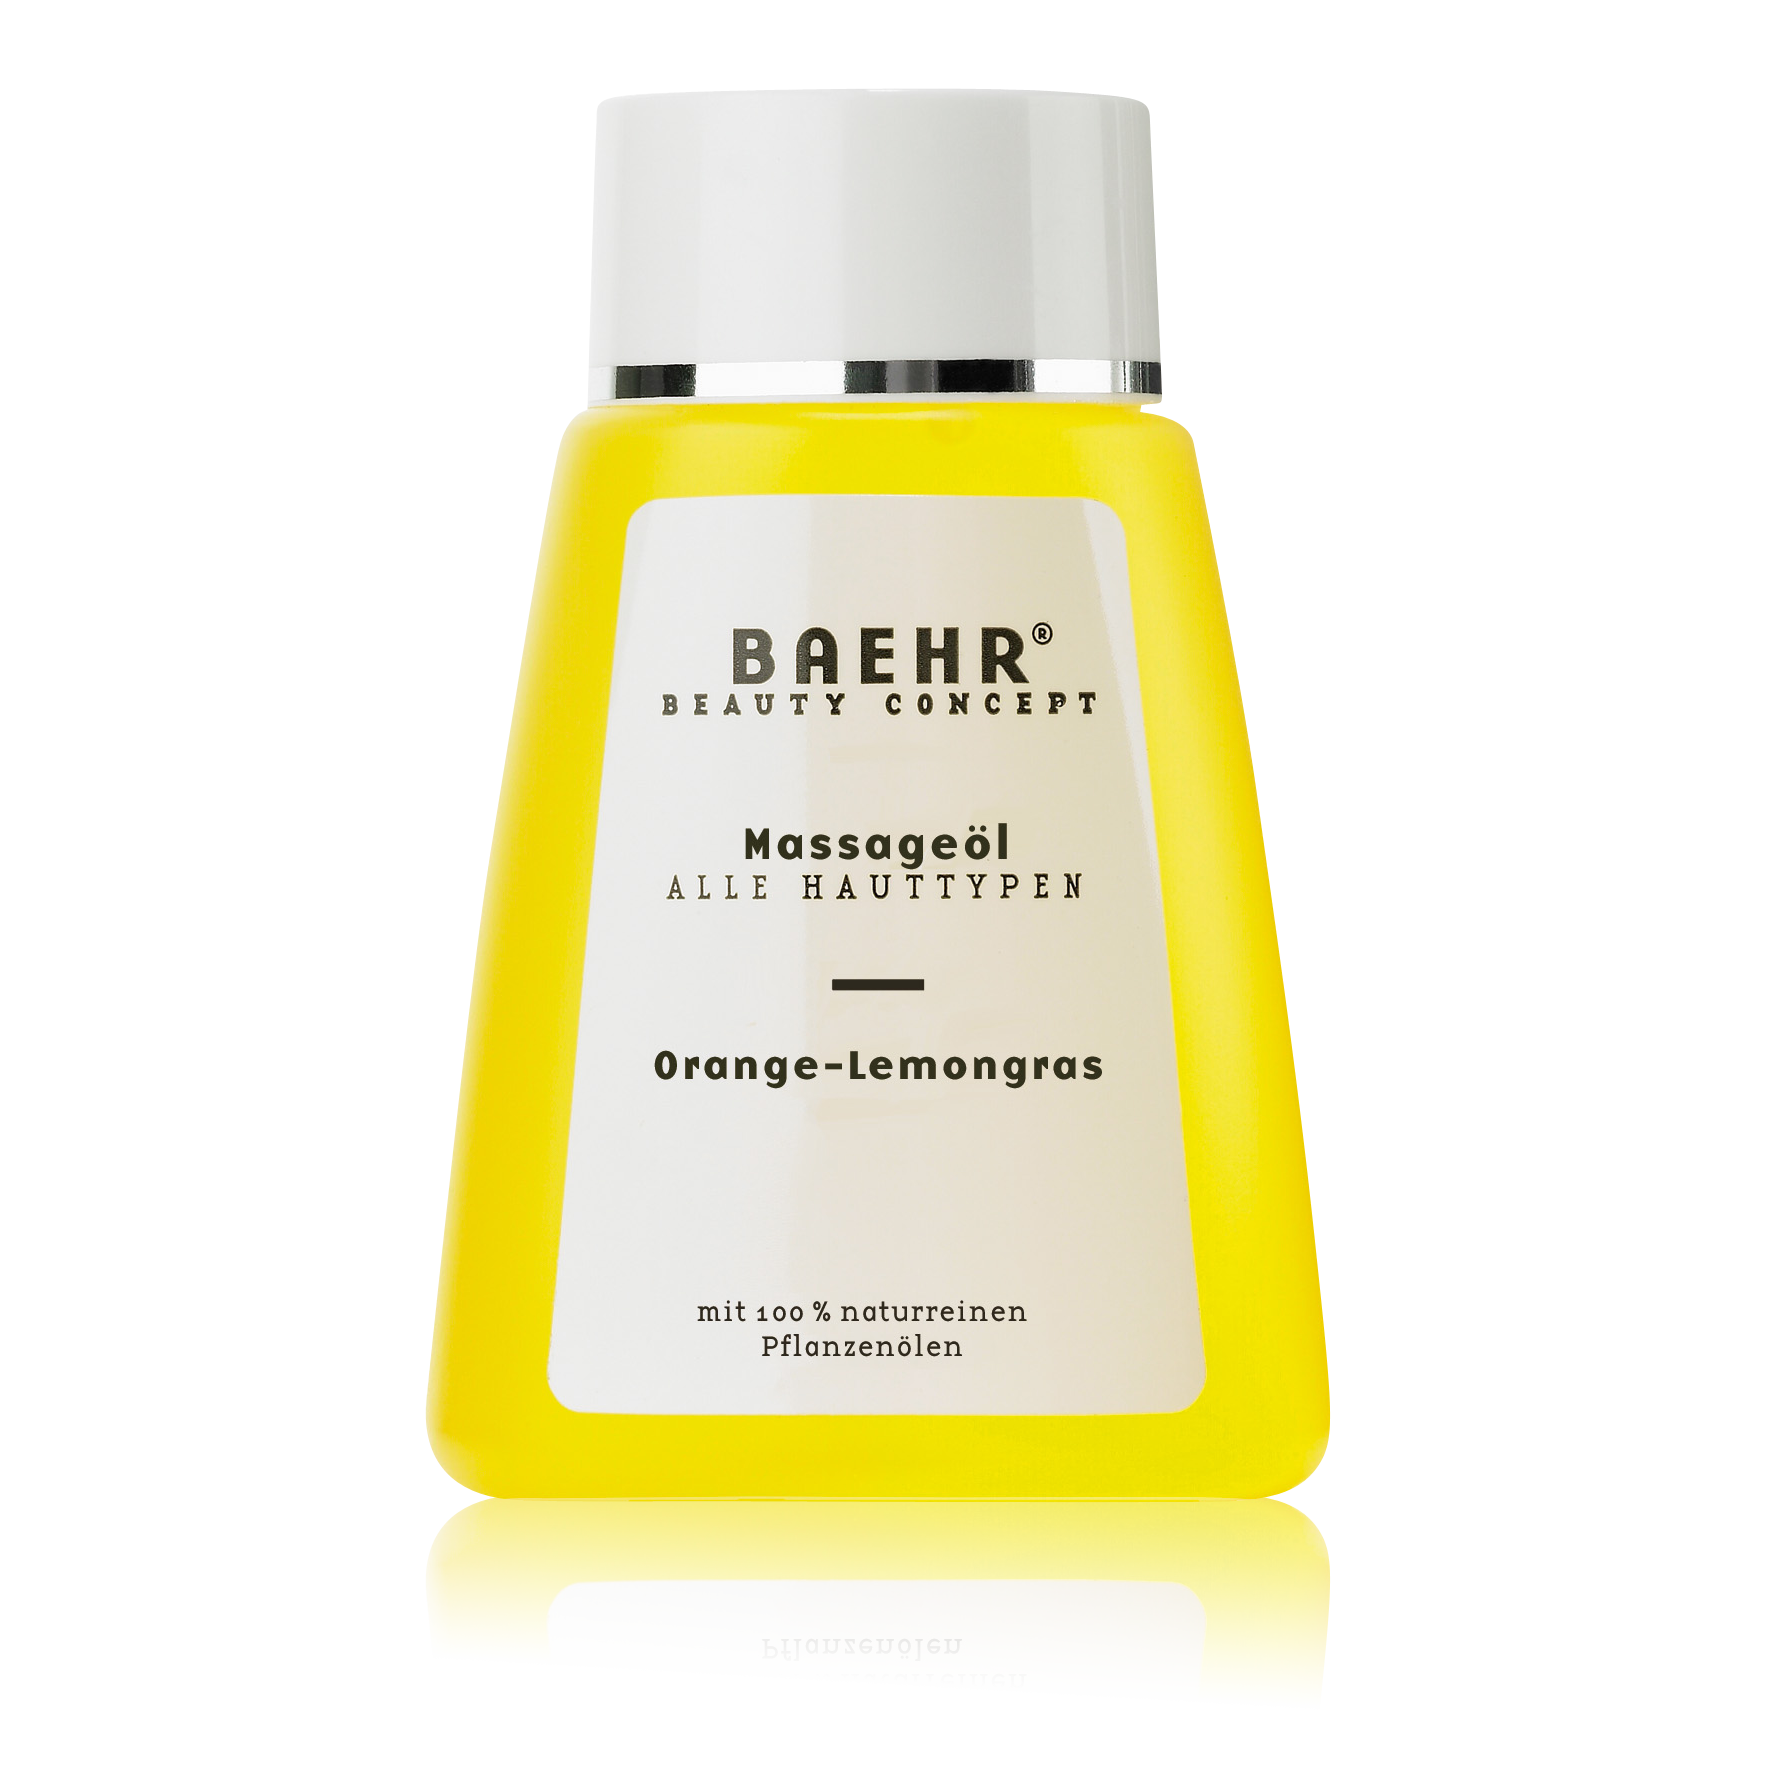 BAEHR BEAUTY CONCEPT Massageöl Orange- Lemongras Flasche 100 ml